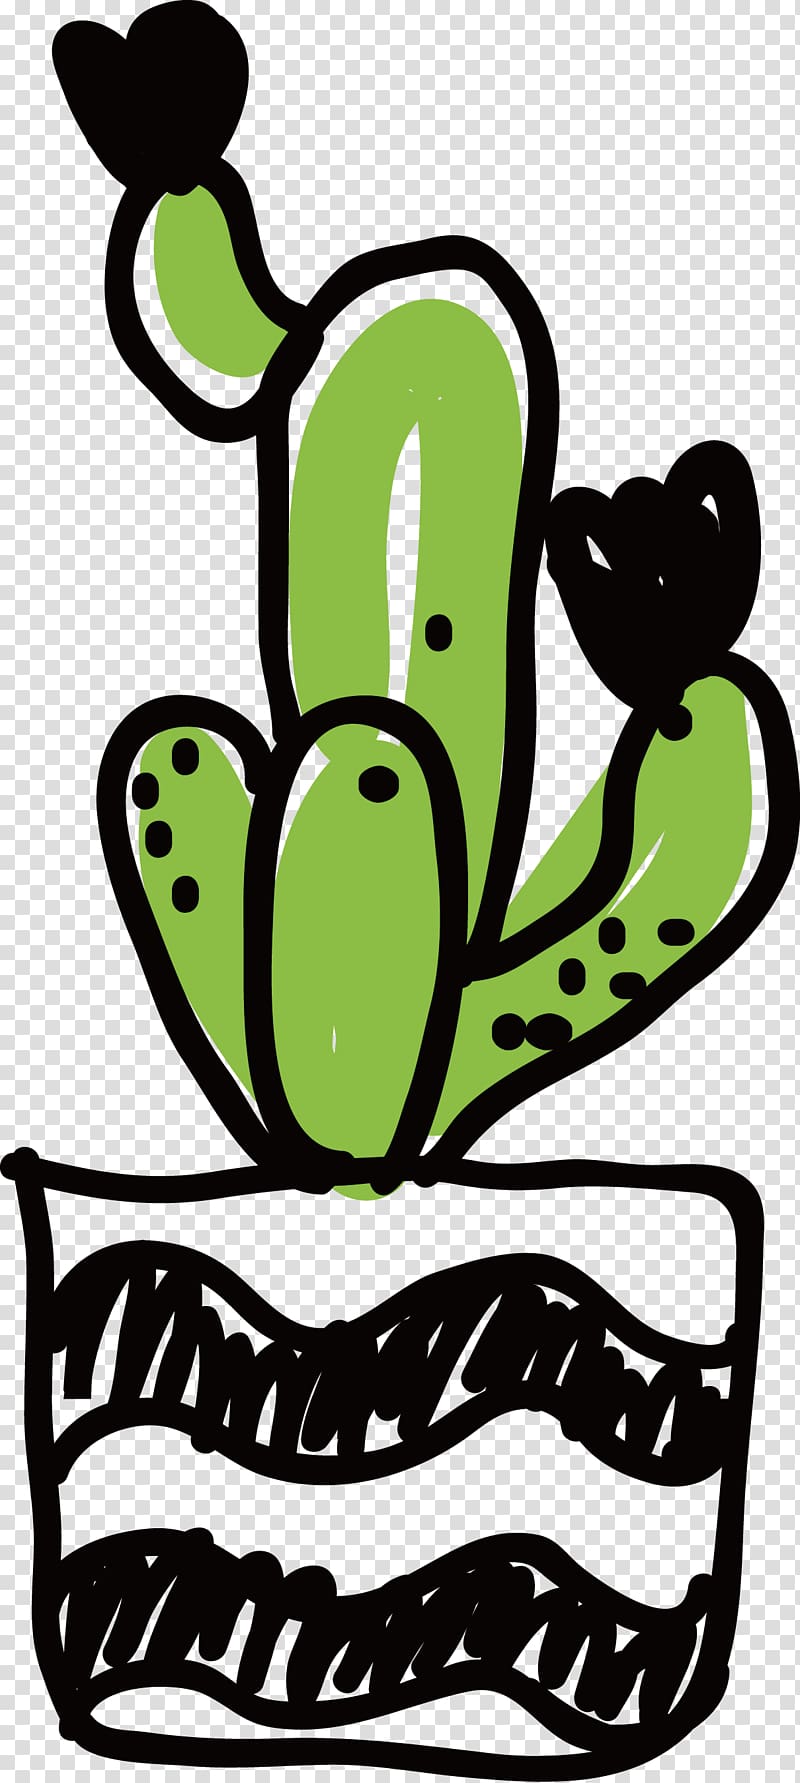 Cactaceae Euclidean , Ascending custom cactus transparent background PNG clipart